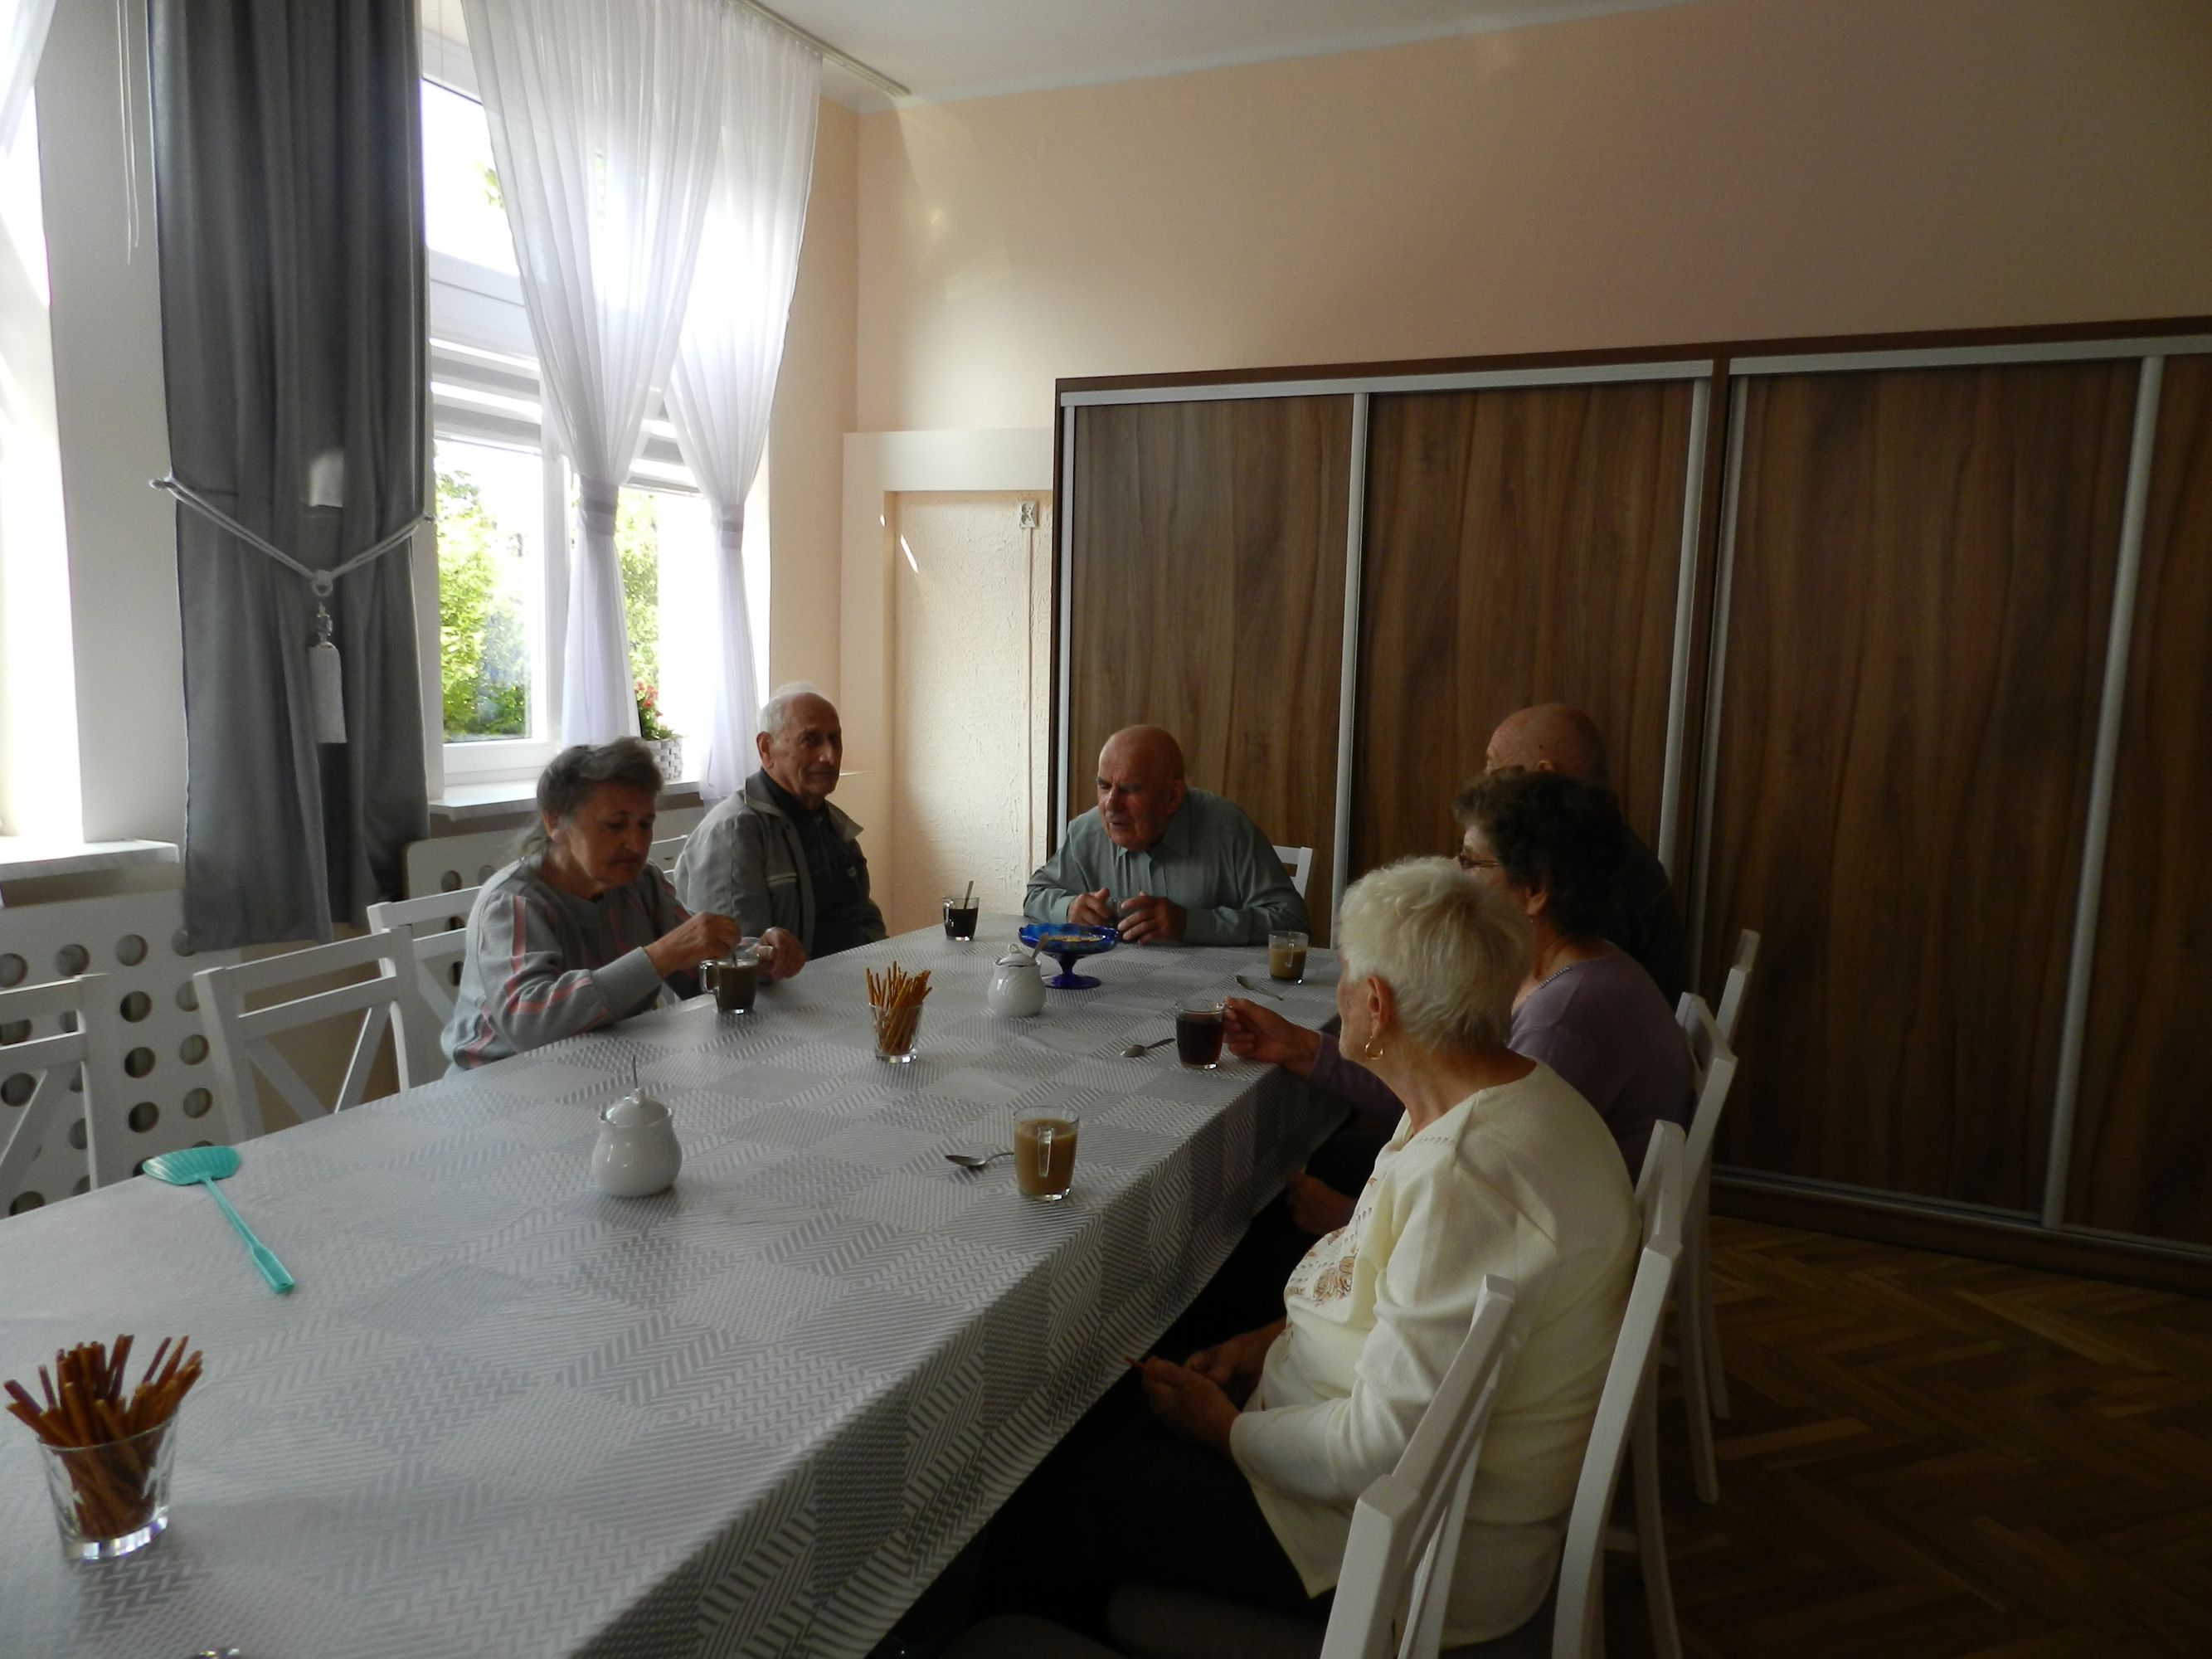 6 uczestników Dziennego Domu Pomocy przy stole podczas picia kawy, rozmowy, w tle duża prostokątna szafa, okno